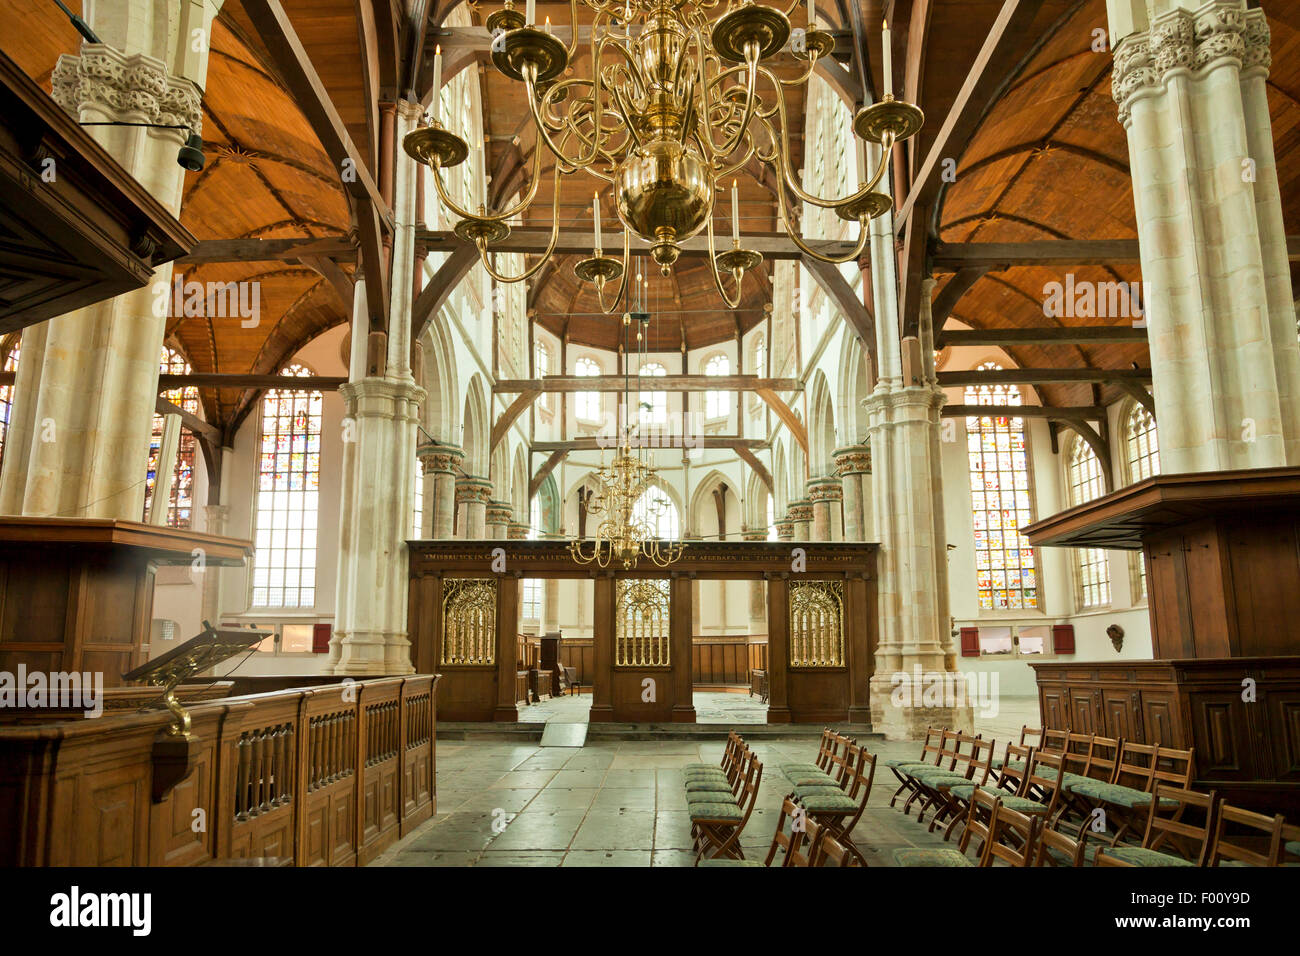 Innenansicht der Oude Kerk / alte Kirche in der niederländischen Hauptstadt Amsterdam, Nordholland, Niederlande Stockfoto